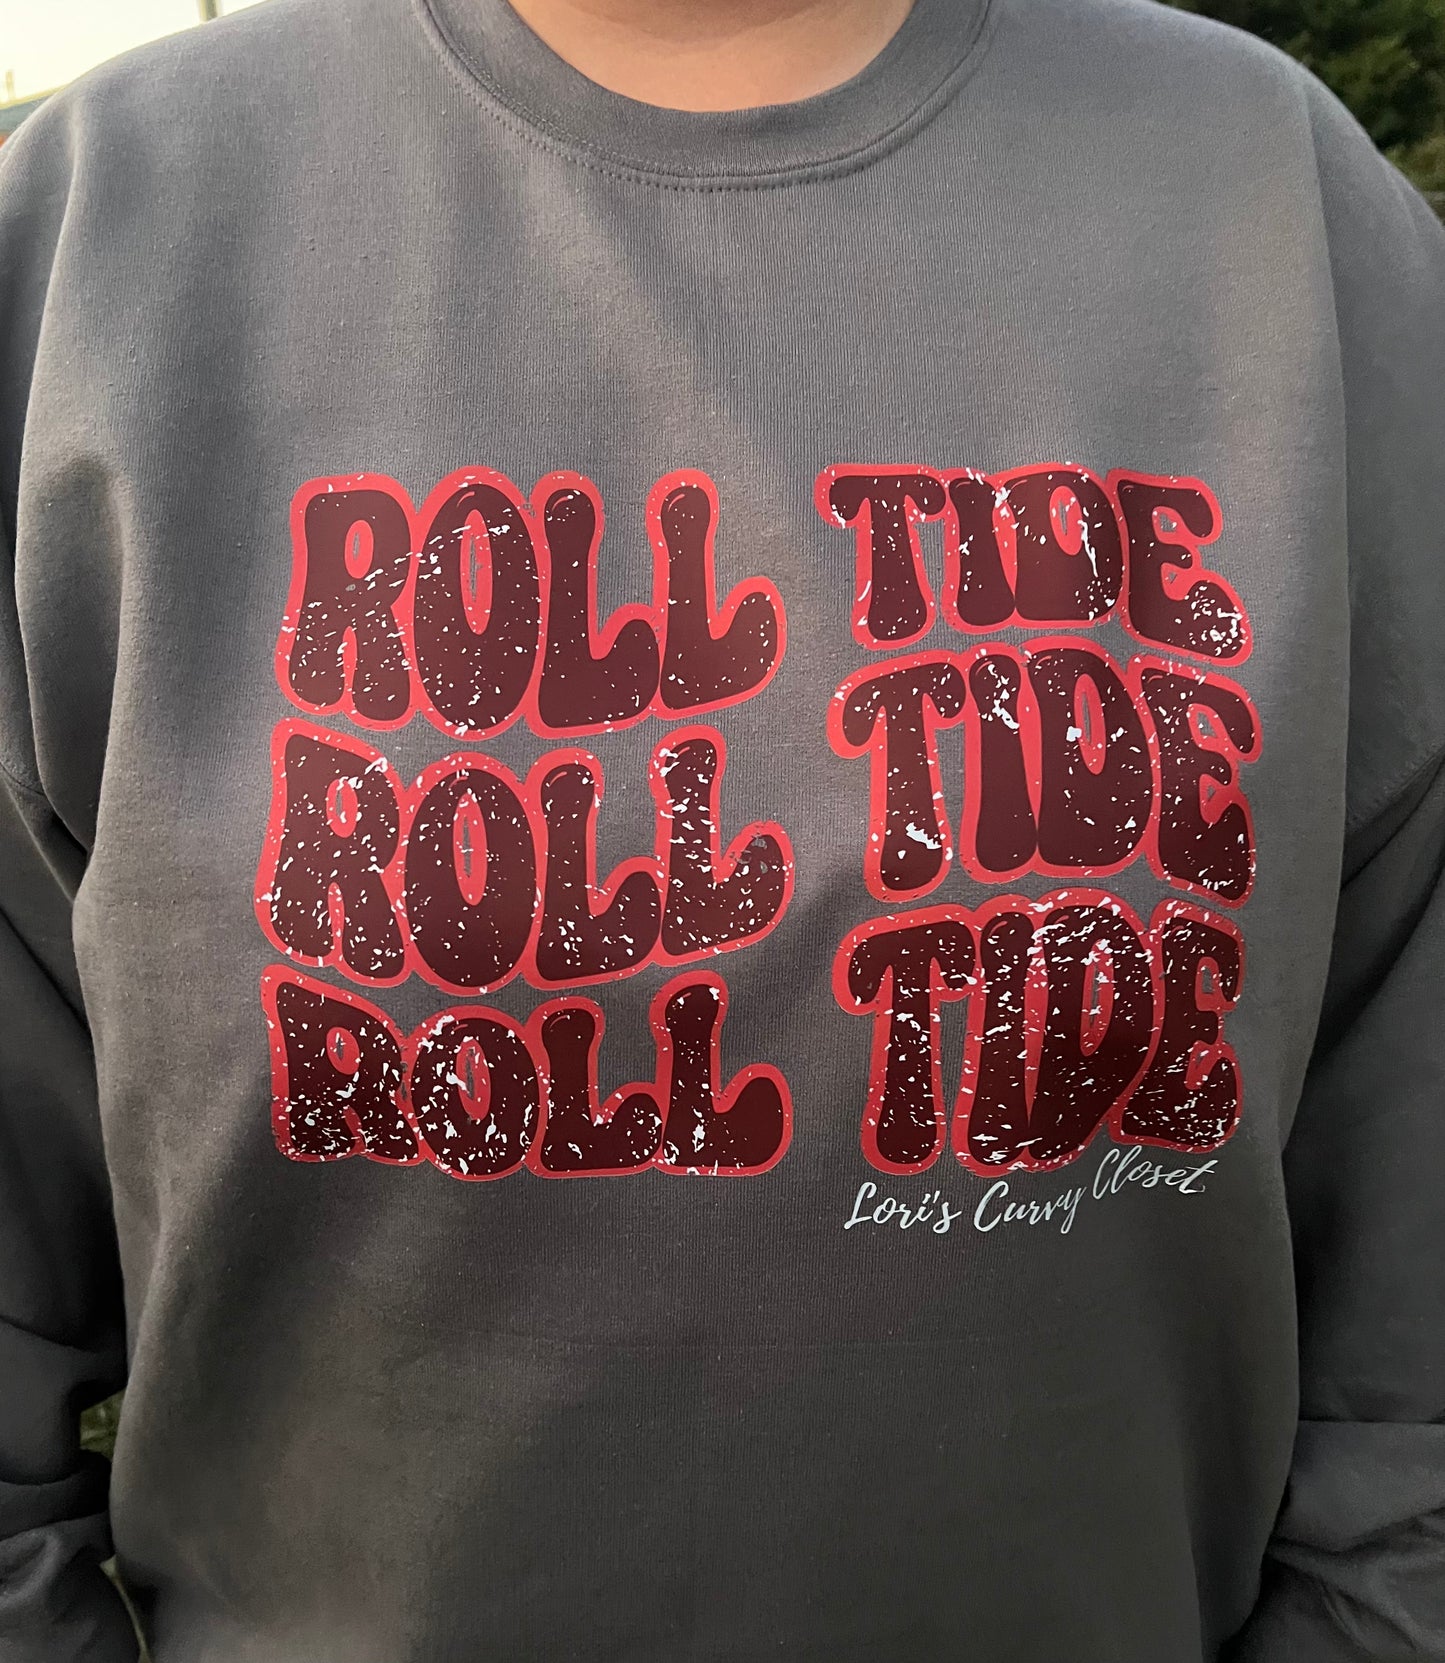 Roll Tide Sweatshirt